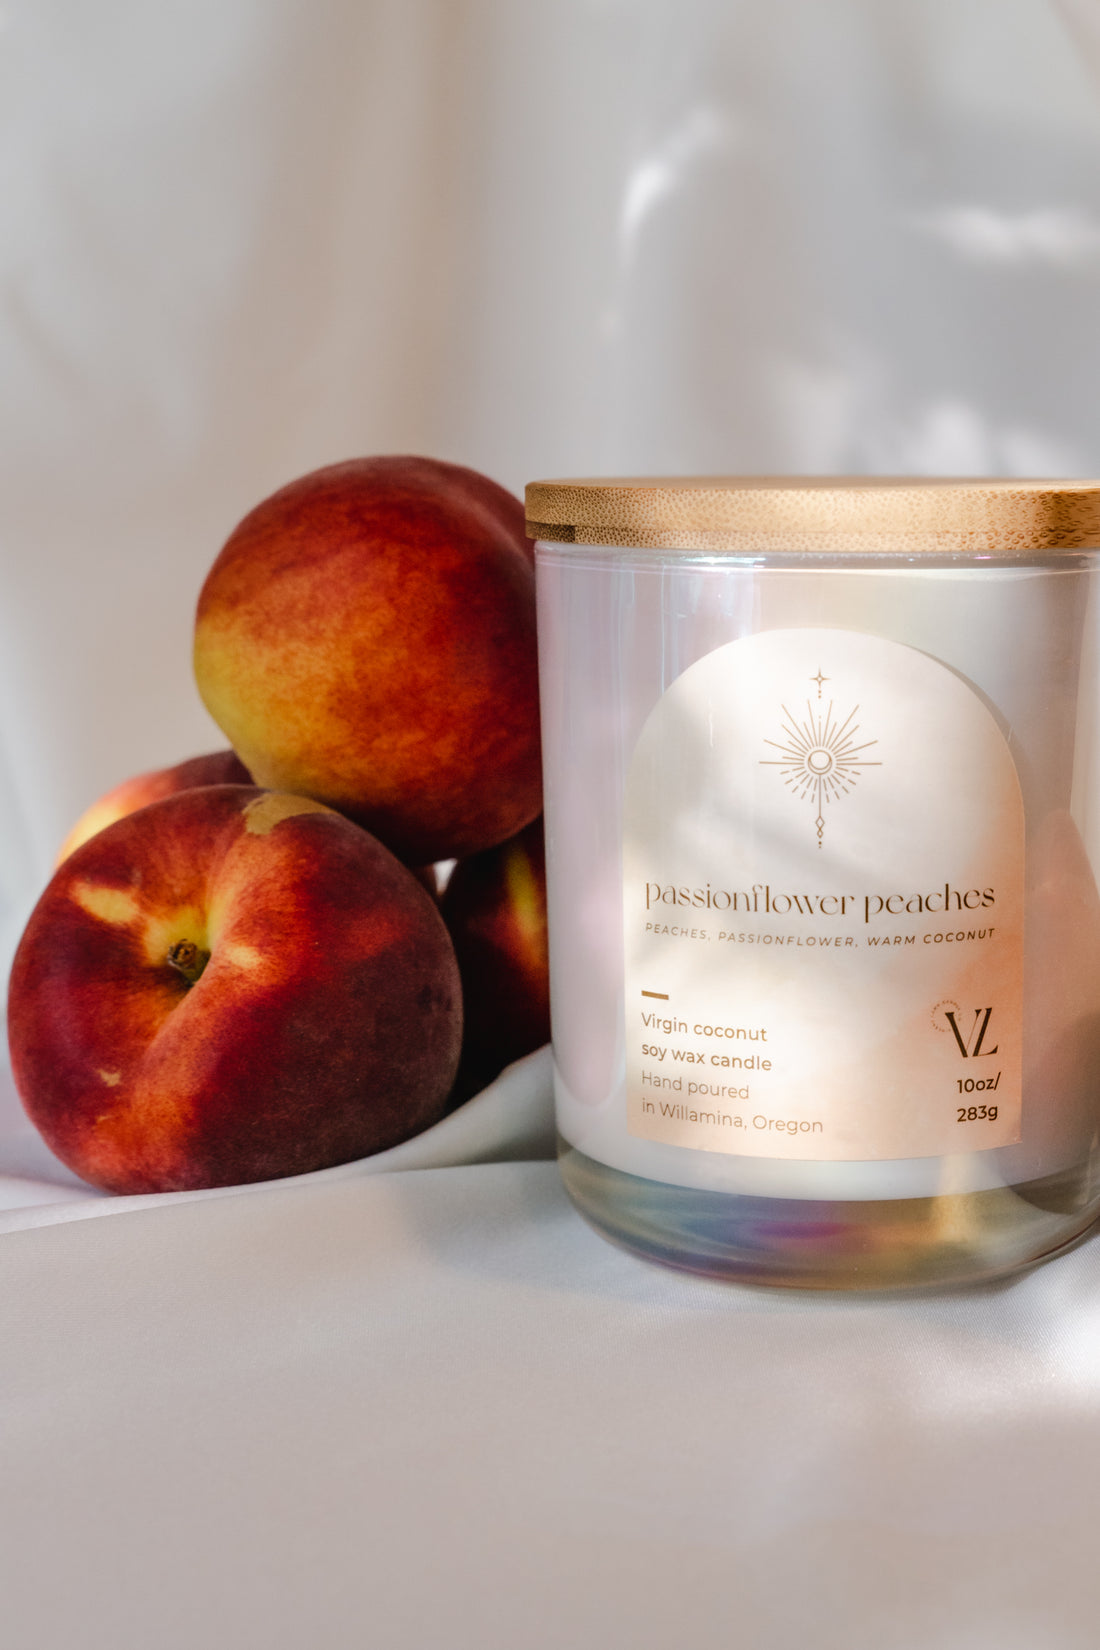 Passionflower peaches | Peaches, passionflower, warm coconut - Vincent Land Candle Co.